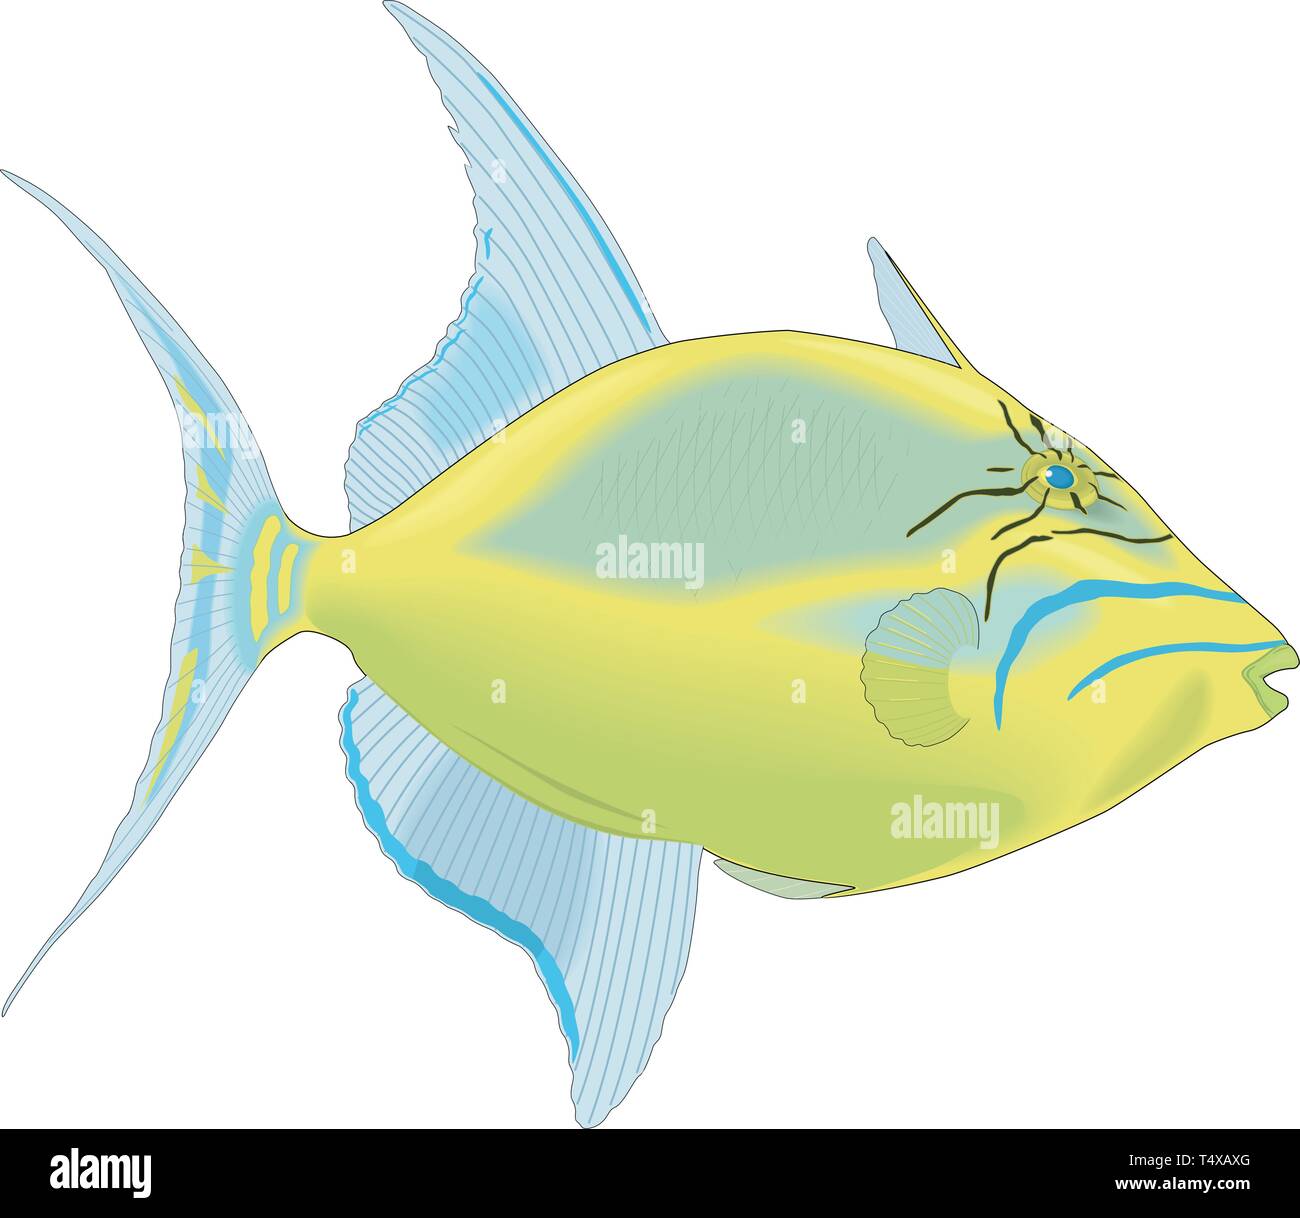 Queen fish Stock Vector Images - Alamy